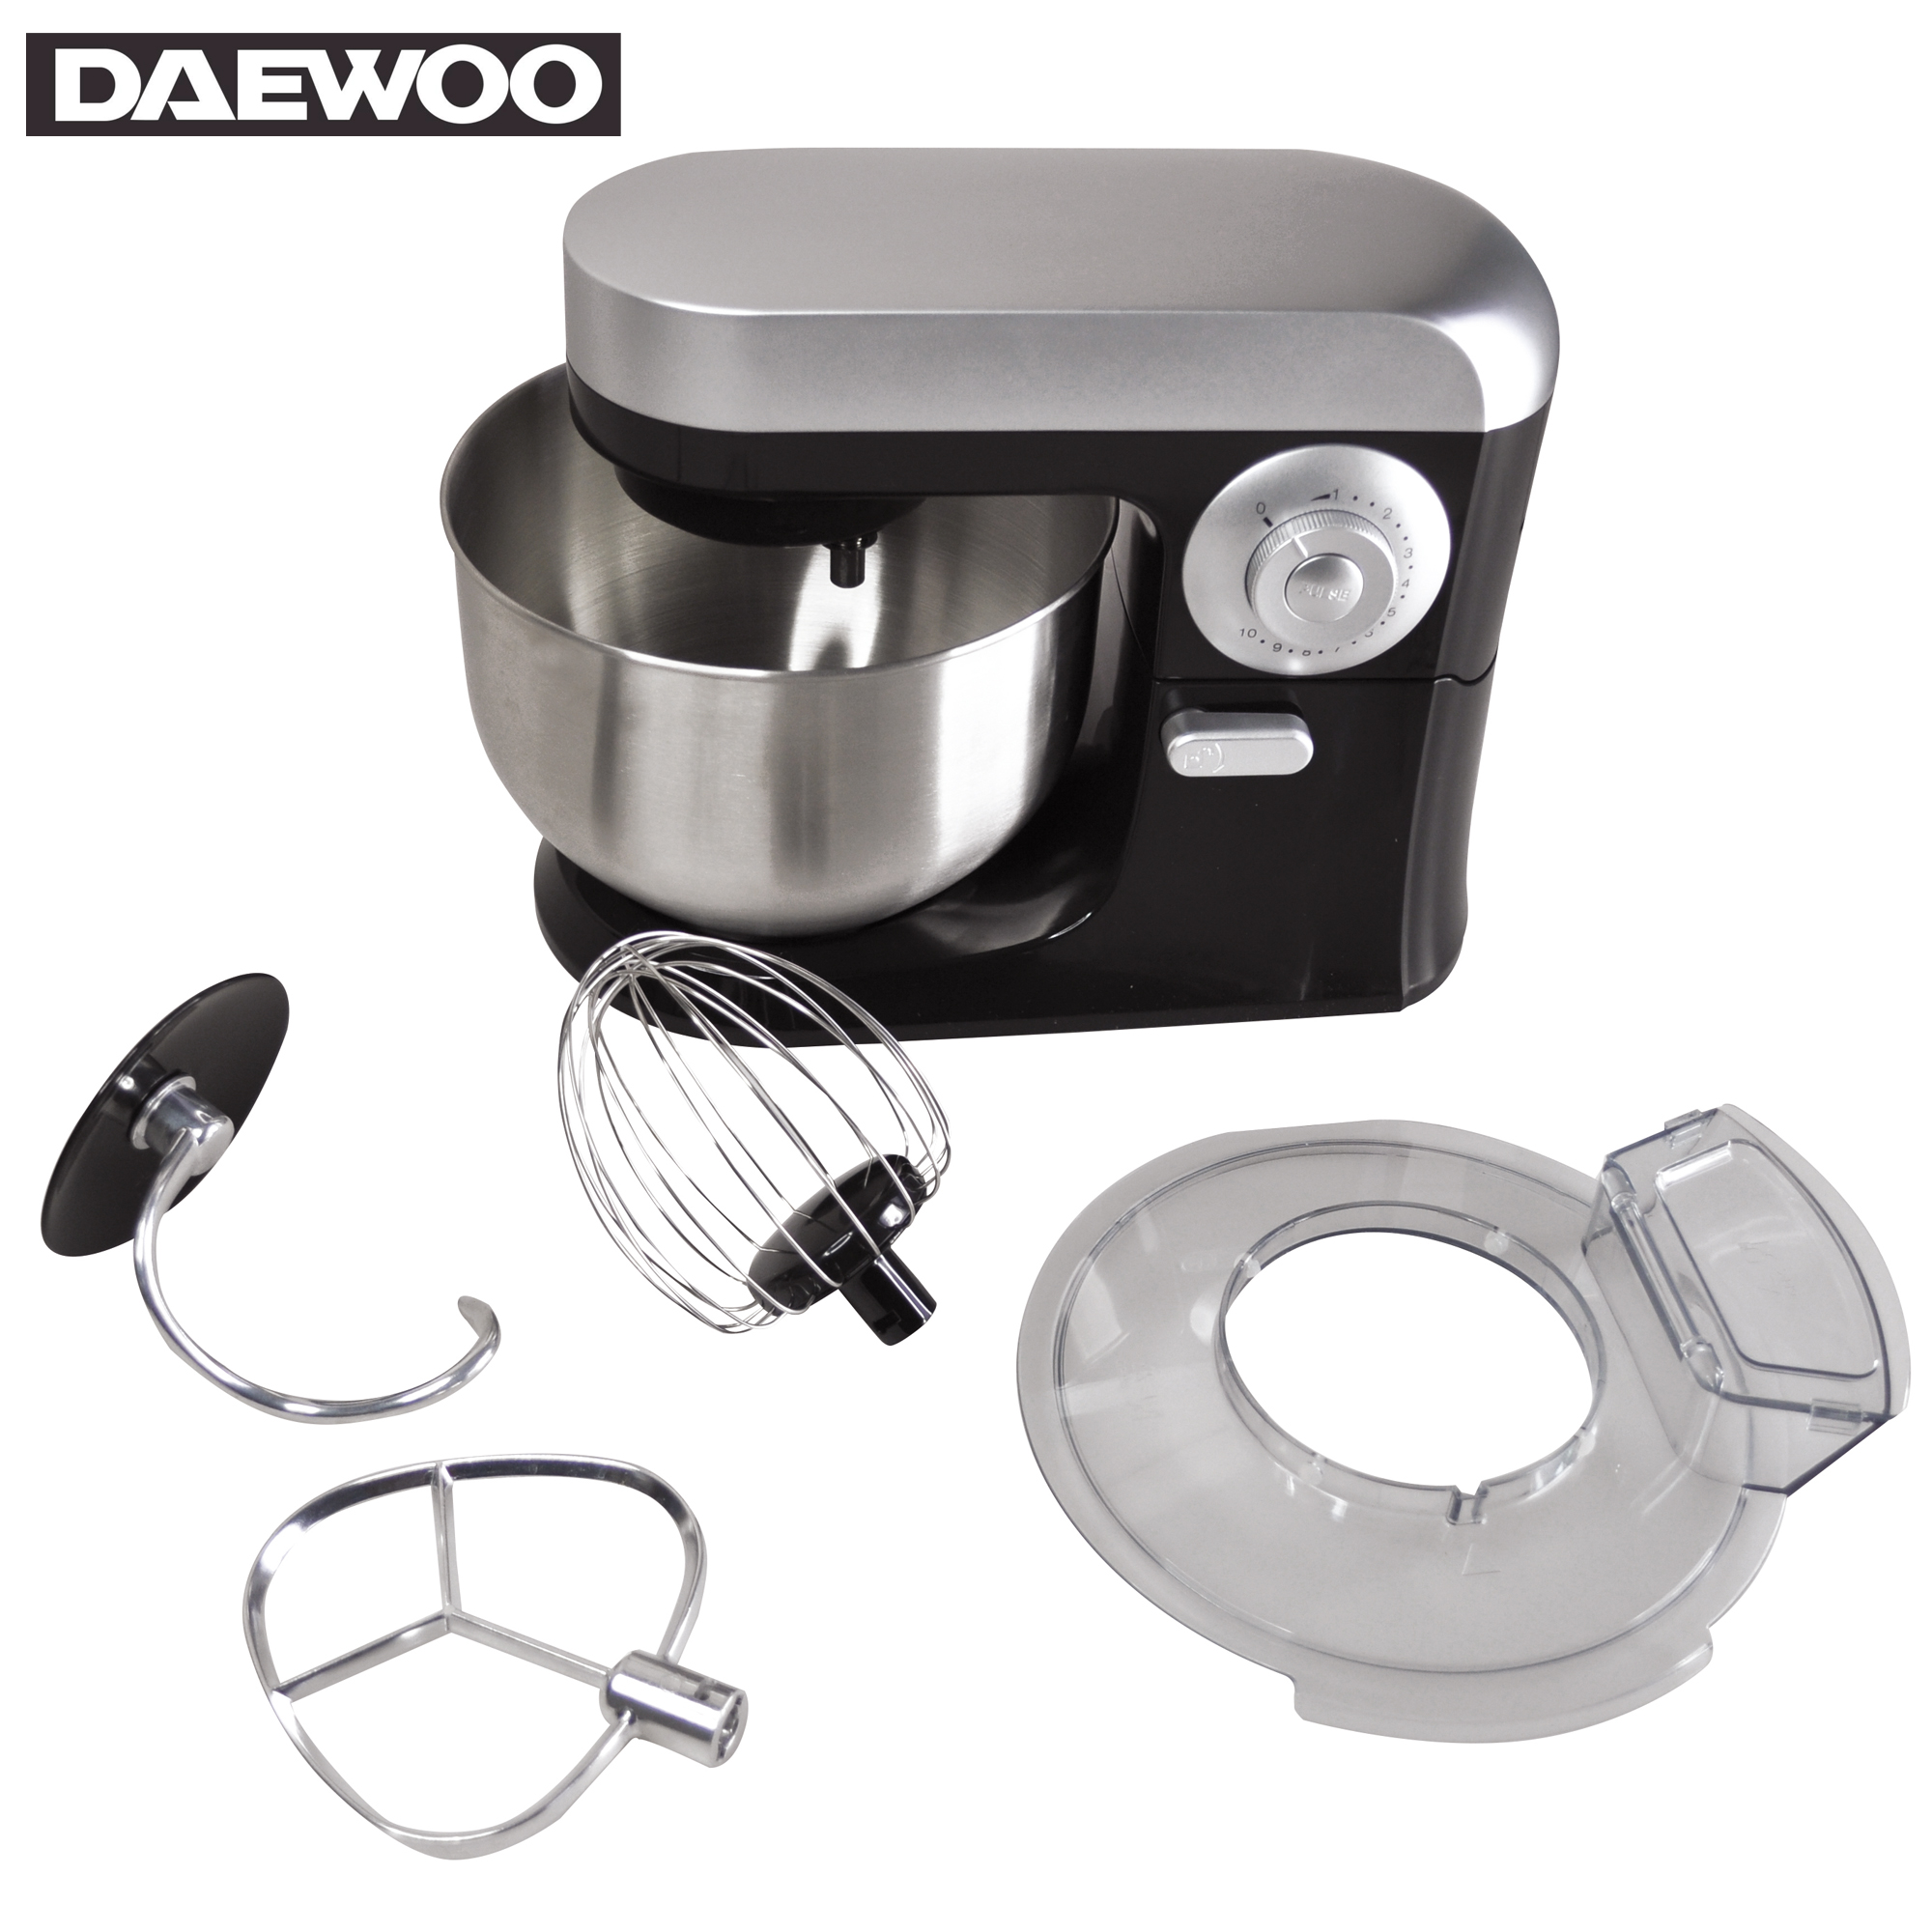 Daewoo-SYM-1410-Robot-Culinaire-SYM-1410-3